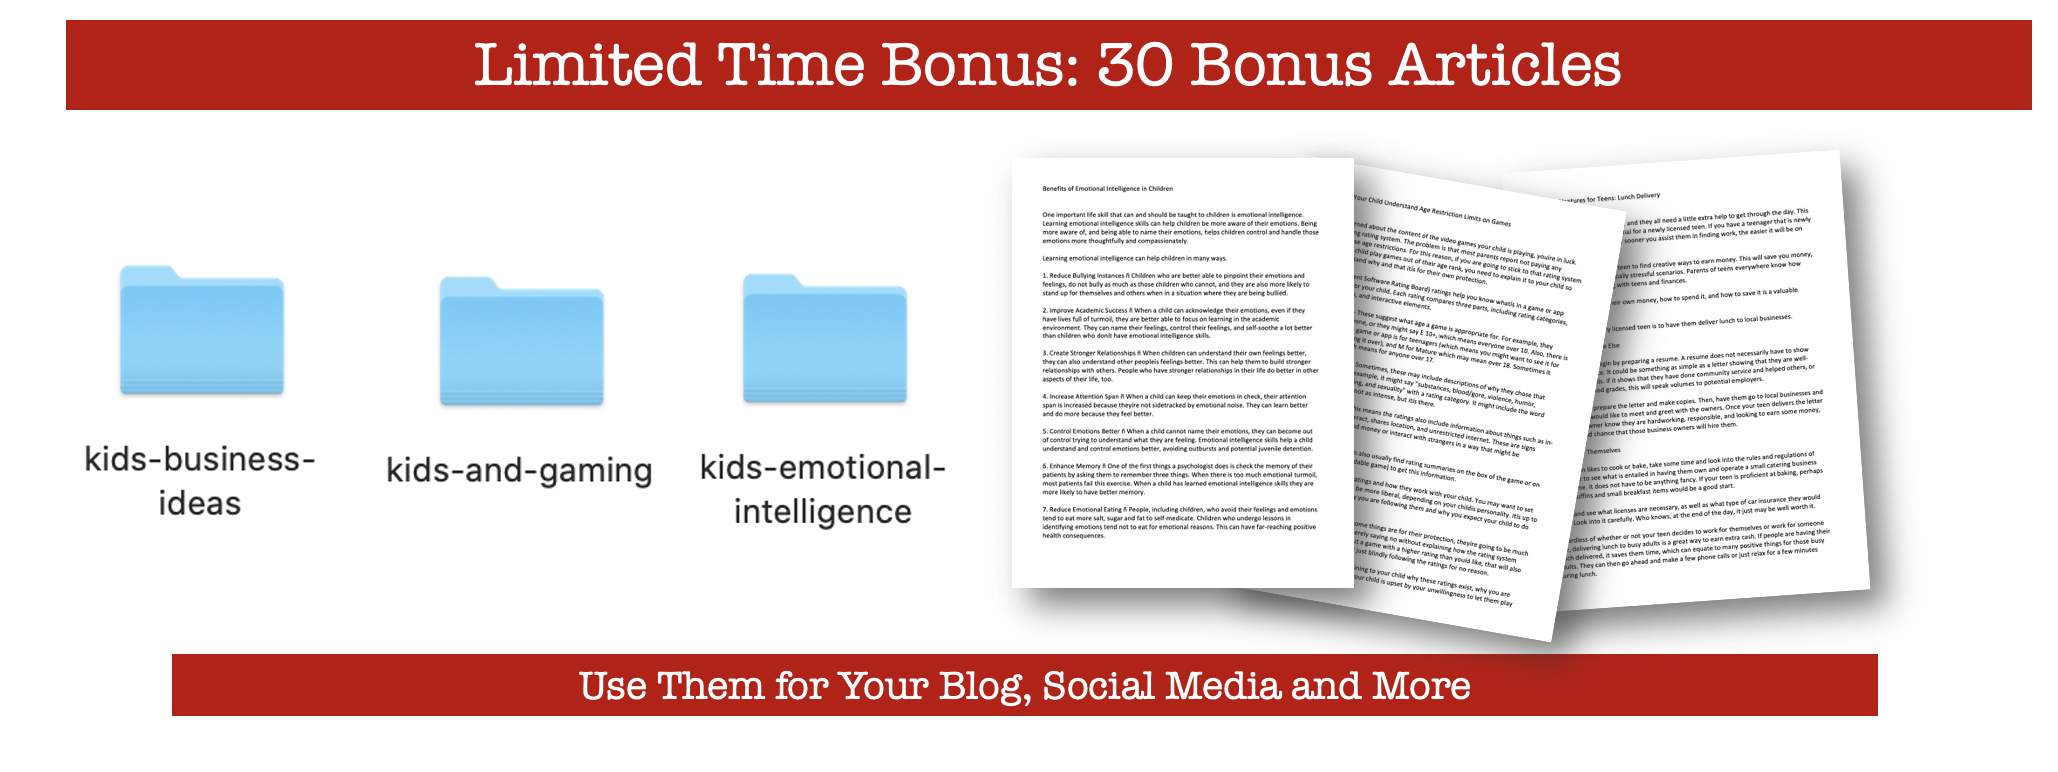 30 Bonus Articles